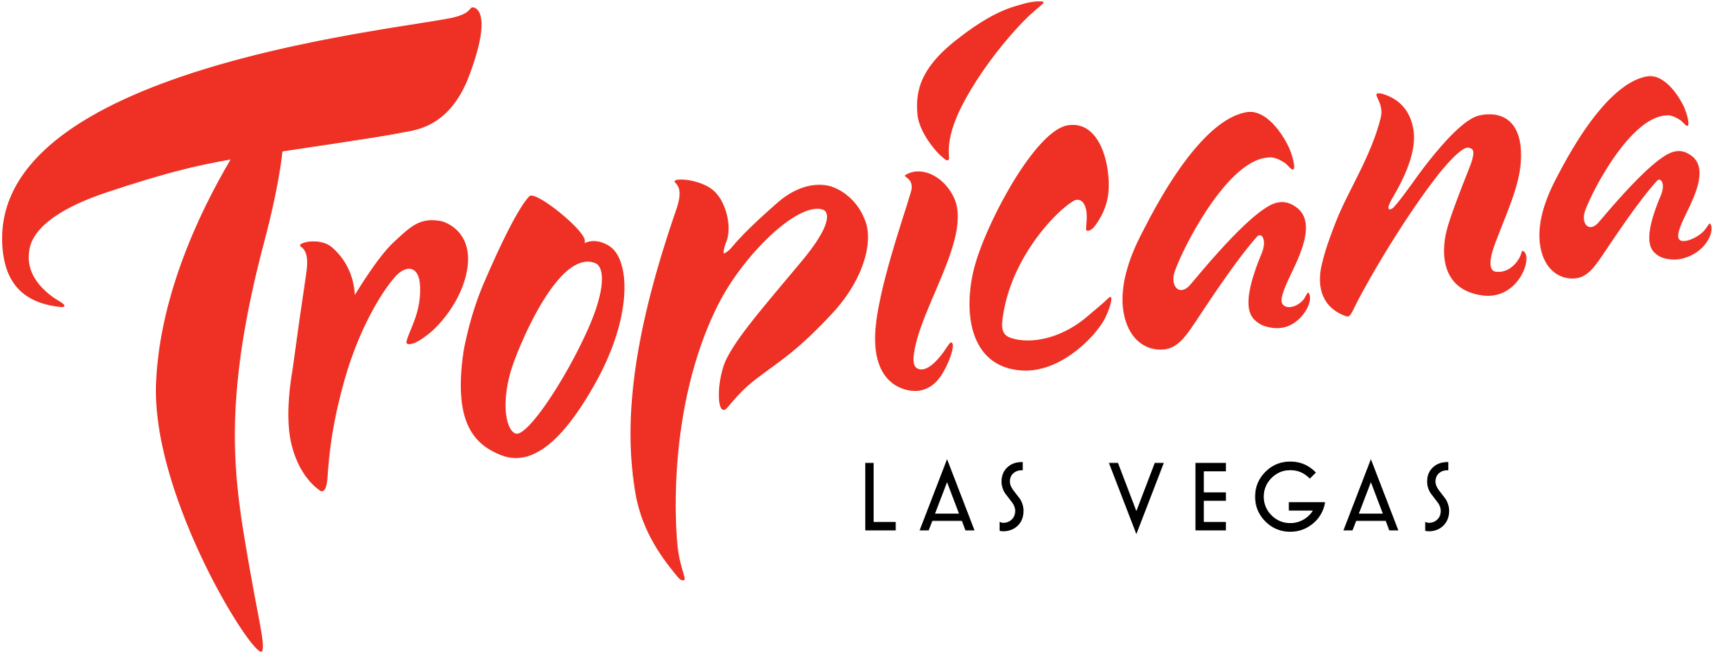 Tropicana Hotel Las Vegas Logo Clipart (2048x684), Png Download